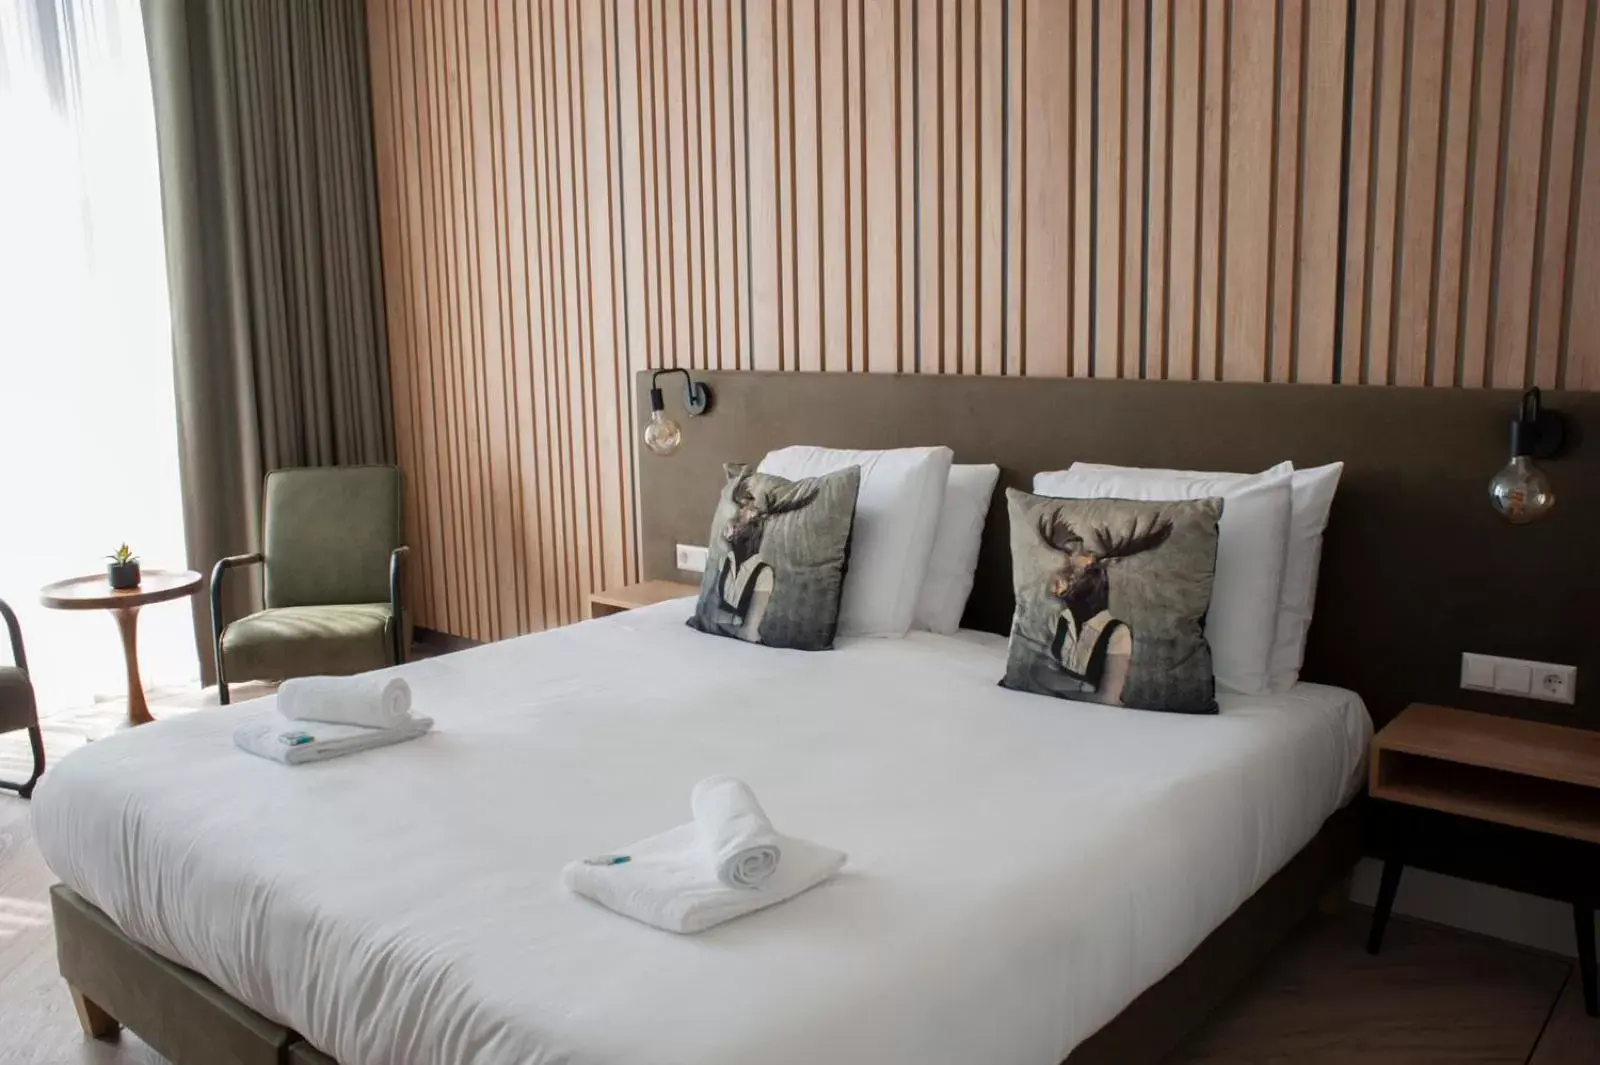 Bed in Hotel de Boshoek